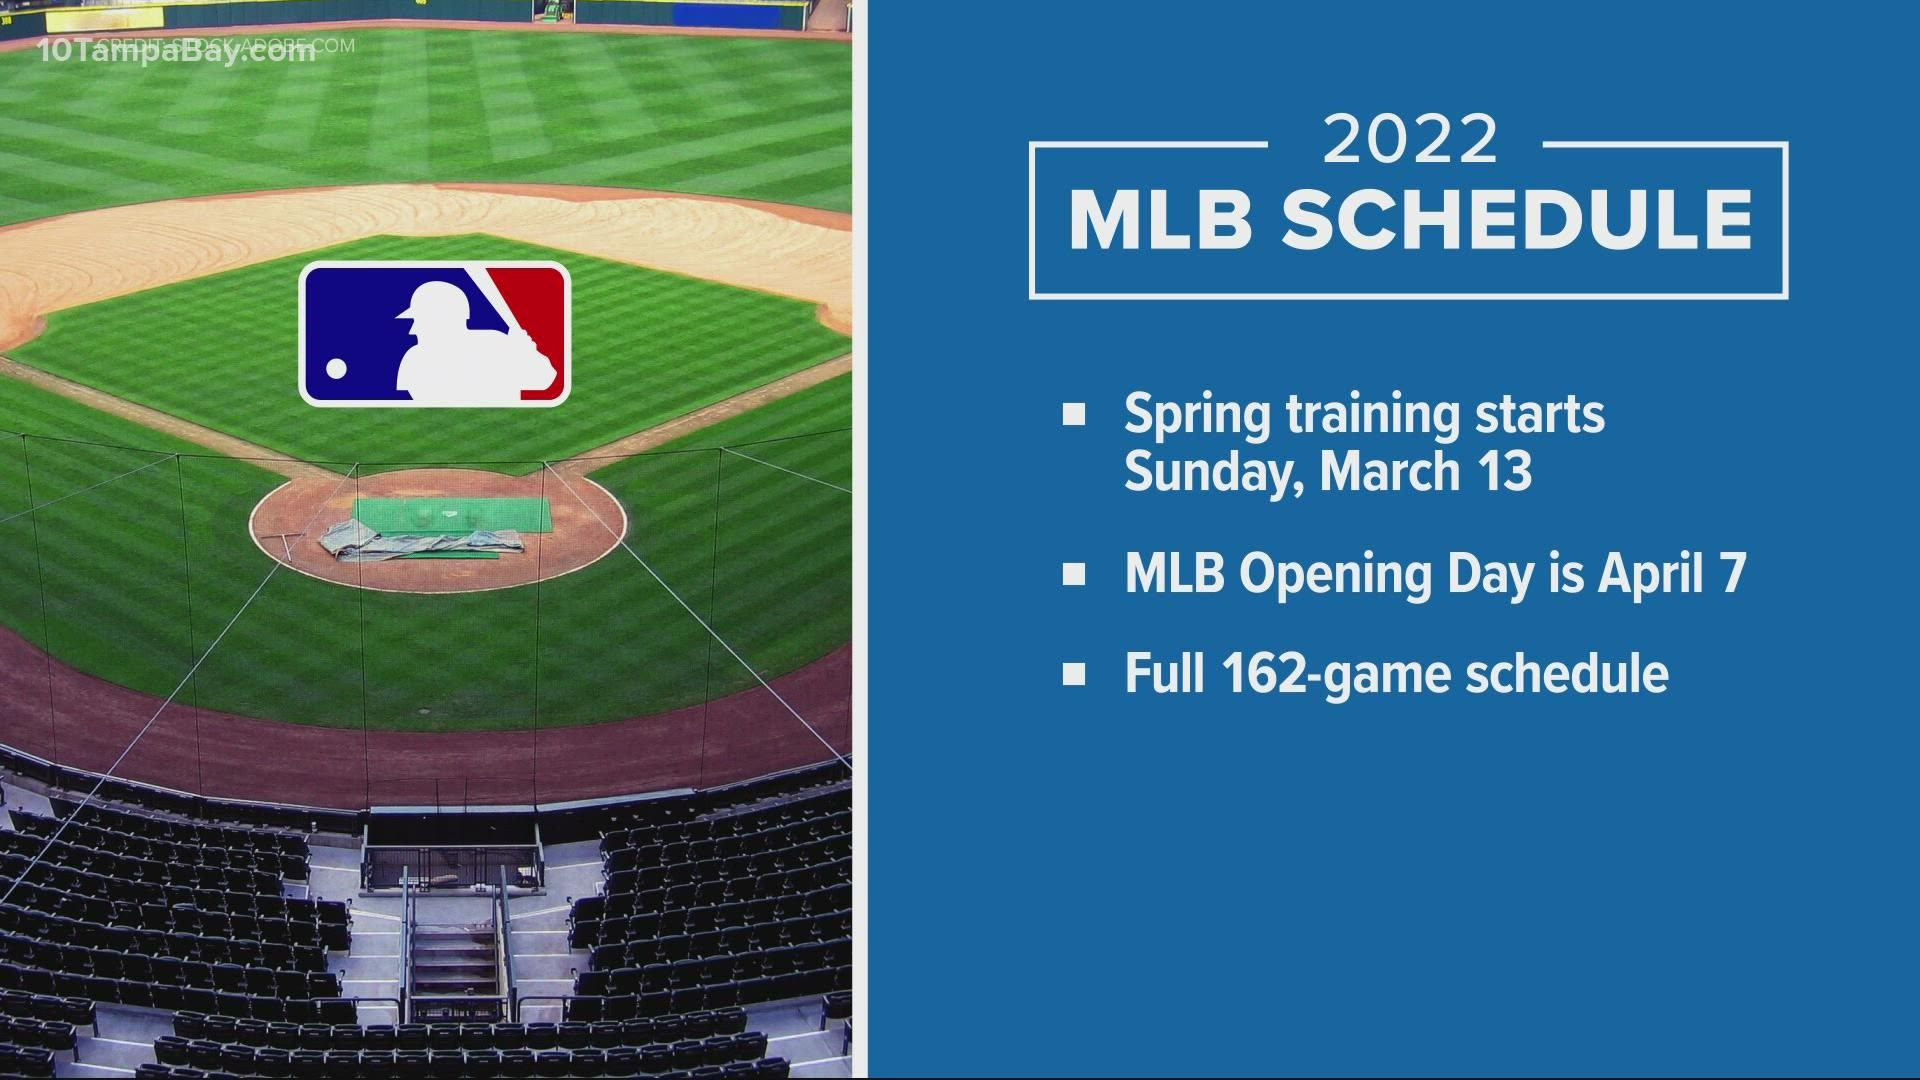 PHOTOS: Major League Baseball Opening Day 2022